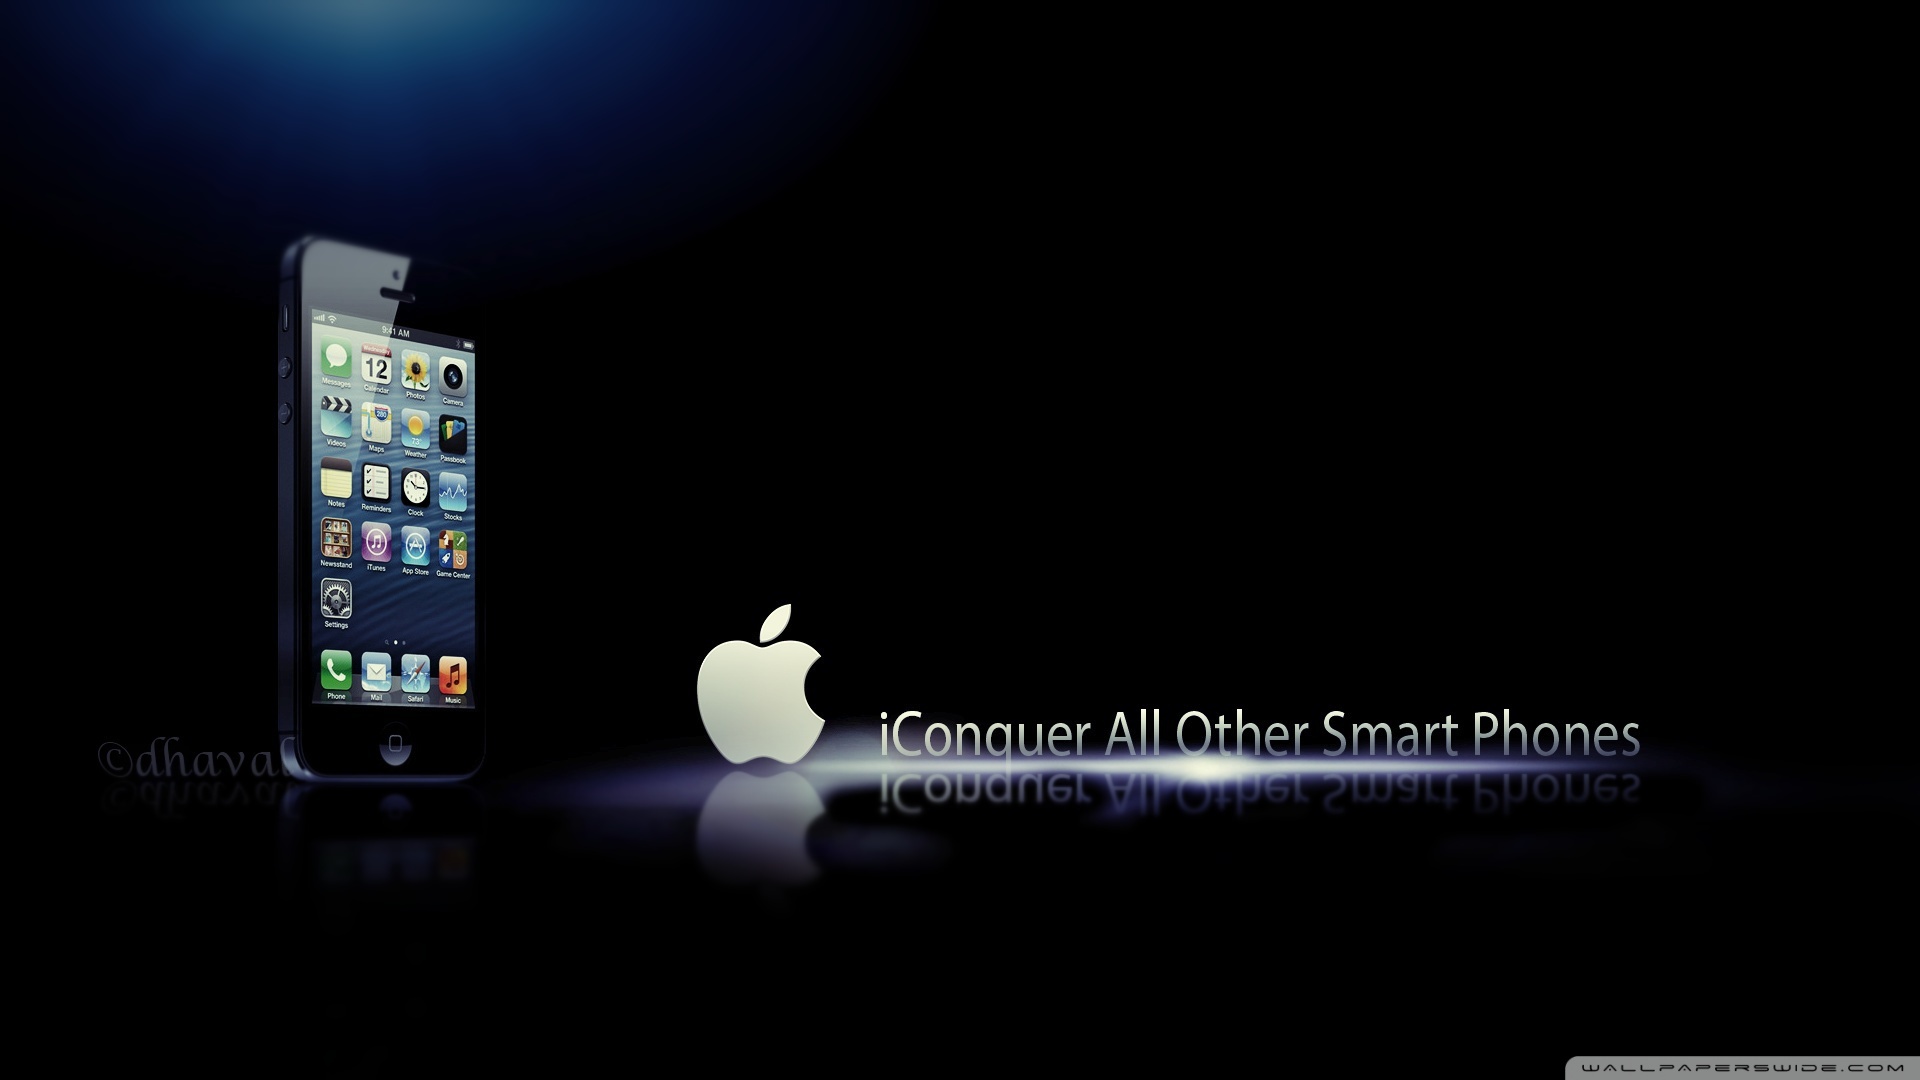 iphone 5s original wallpaper,elektronik,produkt,betriebssystem,gadget,technologie